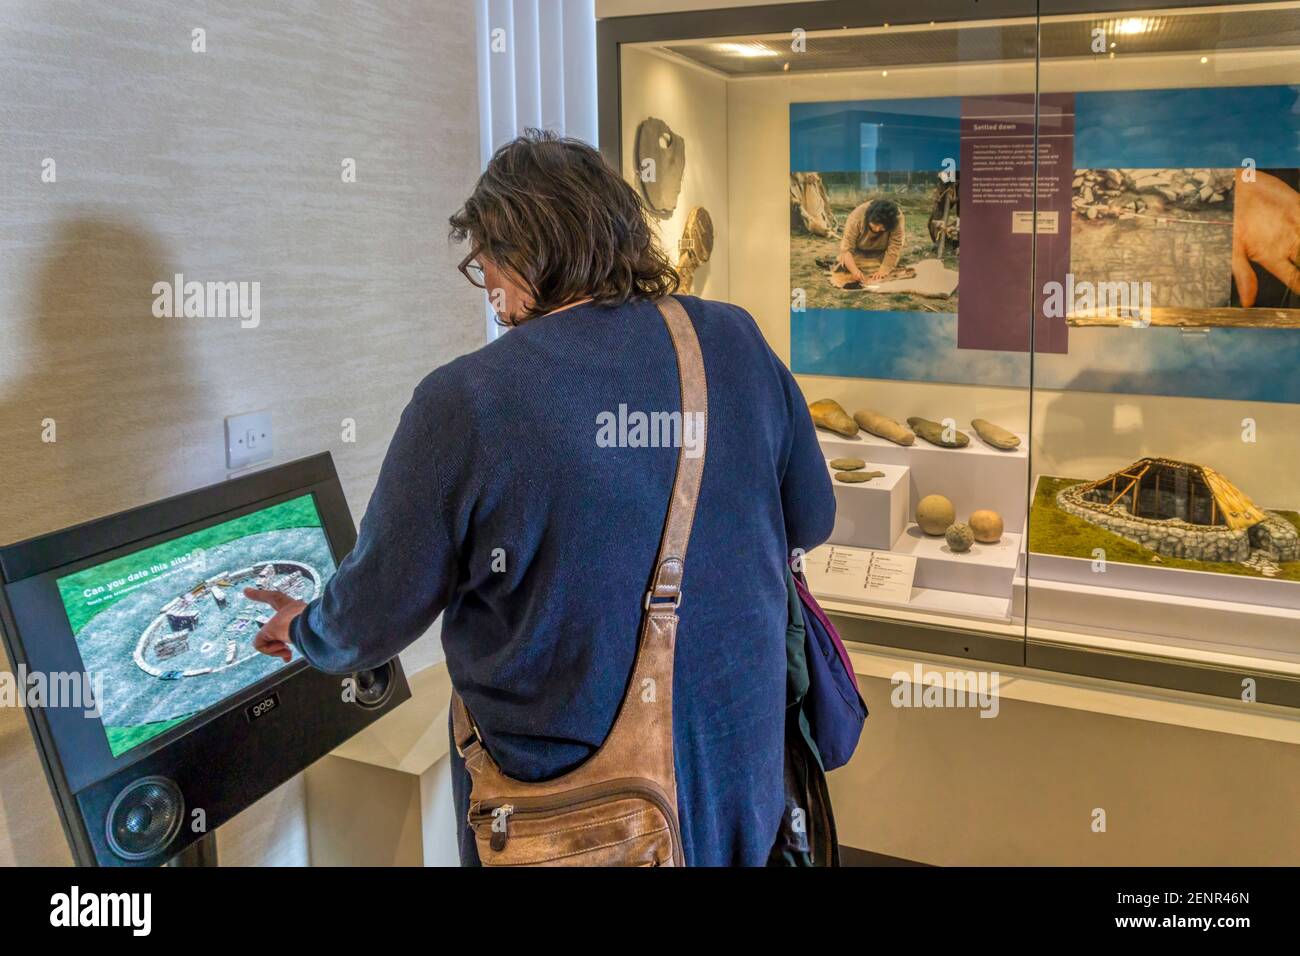 Femme utilisant un écran tactile interactif pour lire plus d'informations dans le cadre d'une exposition de musée. Banque D'Images